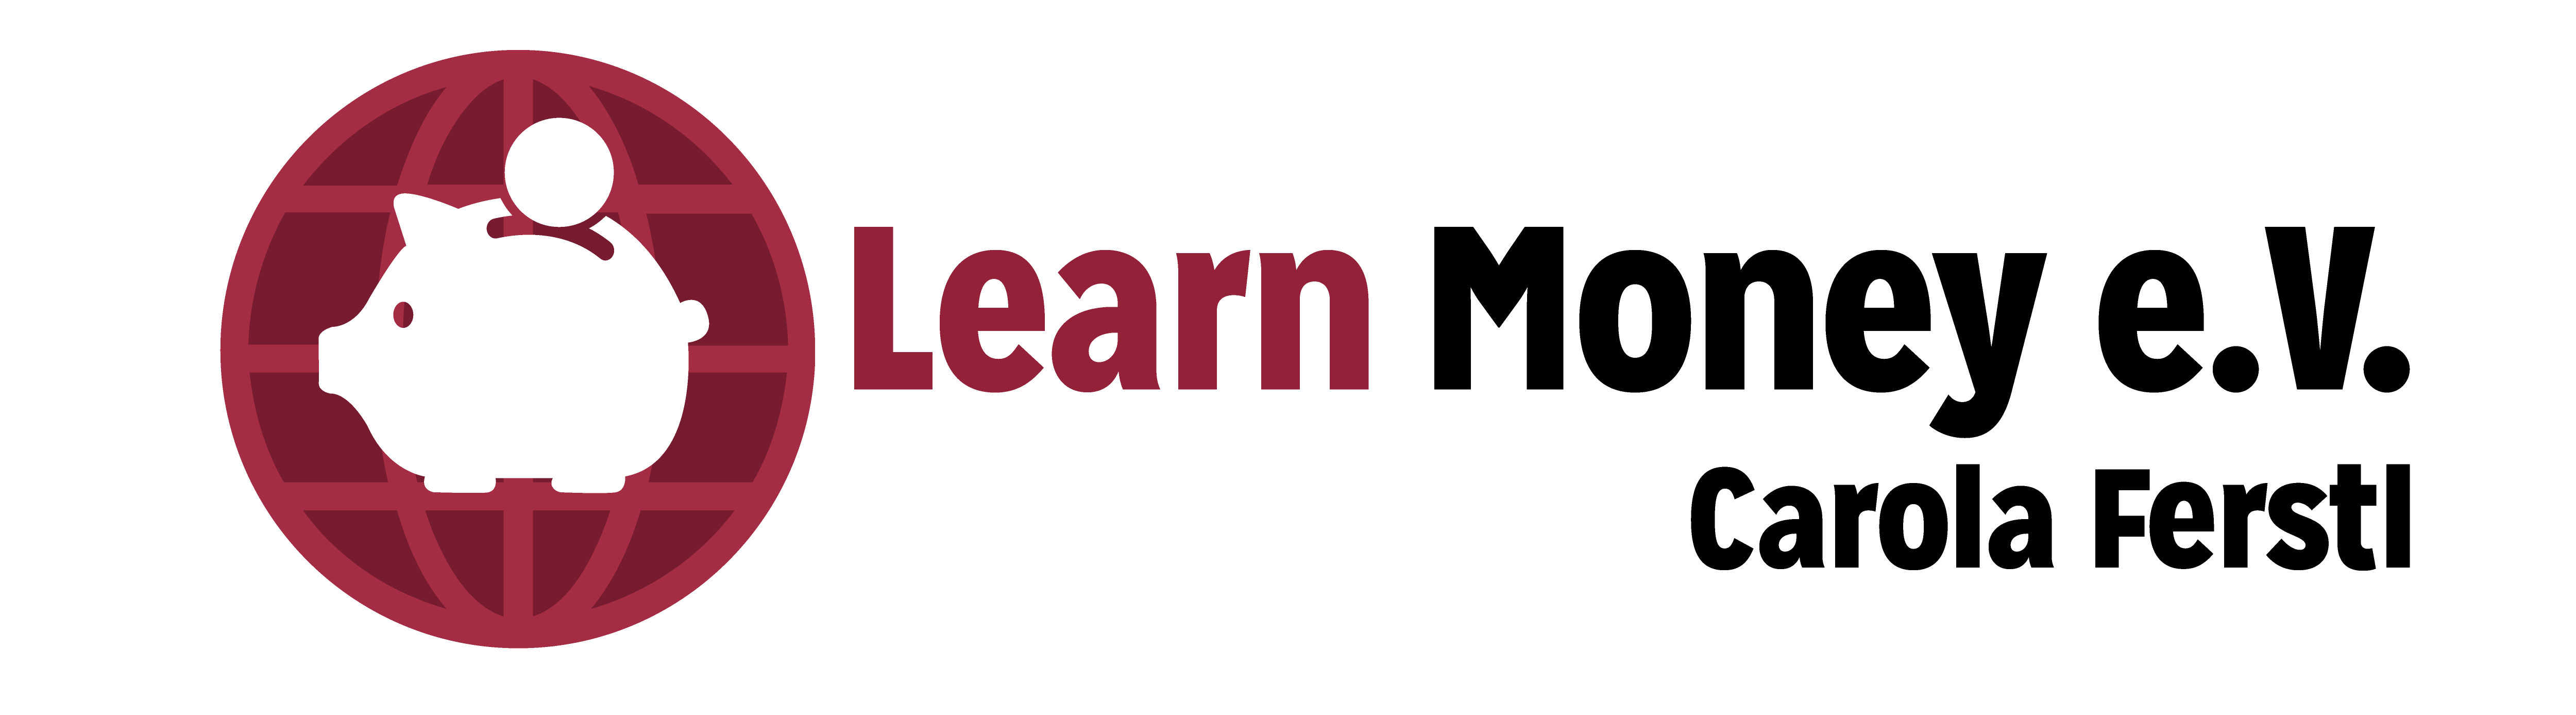 Learn Money